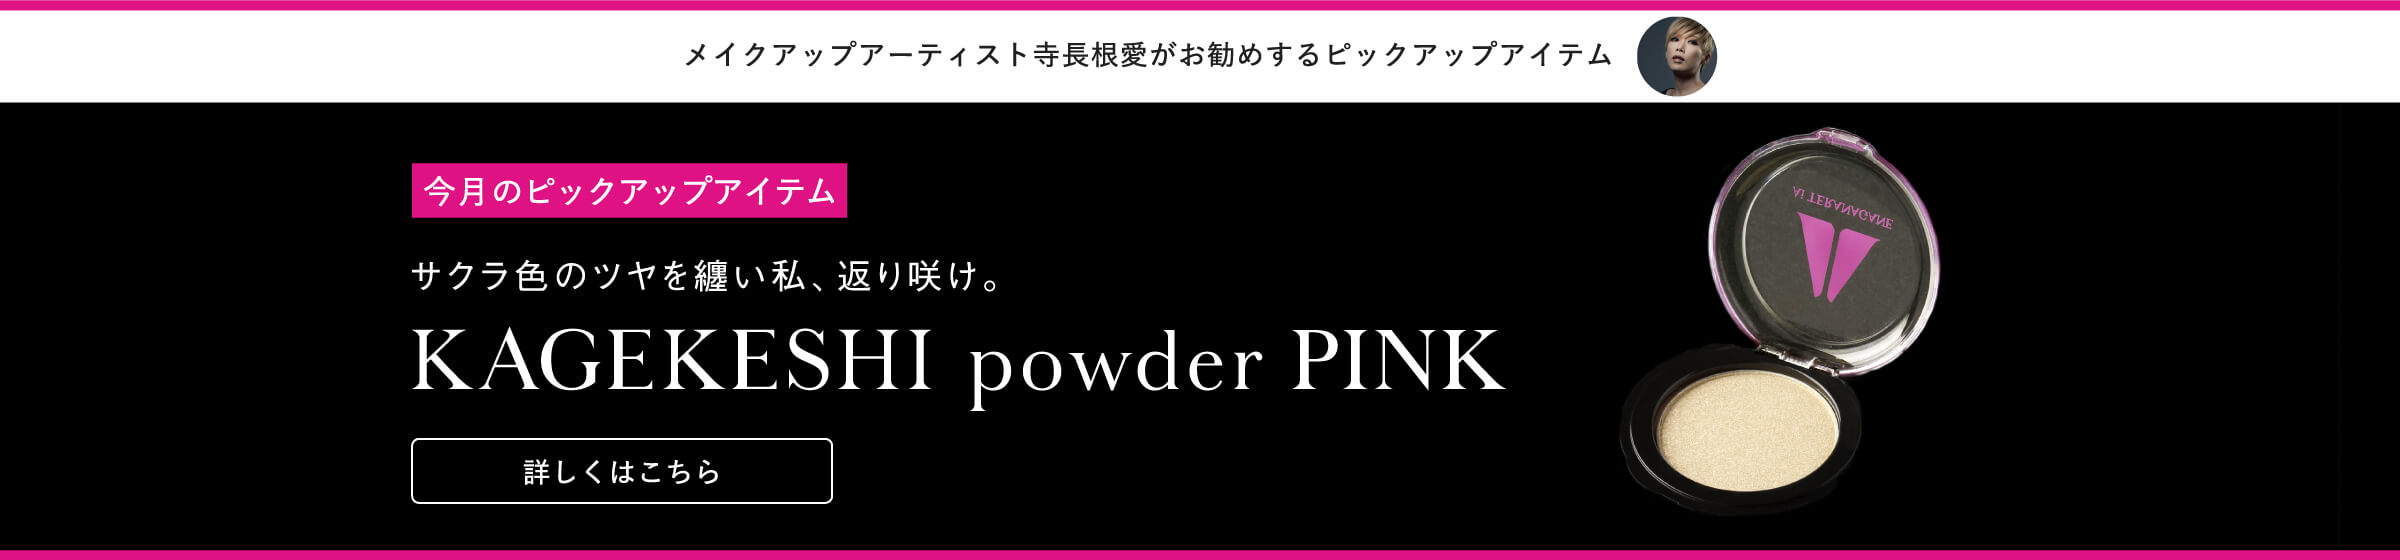 今月のピックアップアイテム KAGEKESHI powder PINK